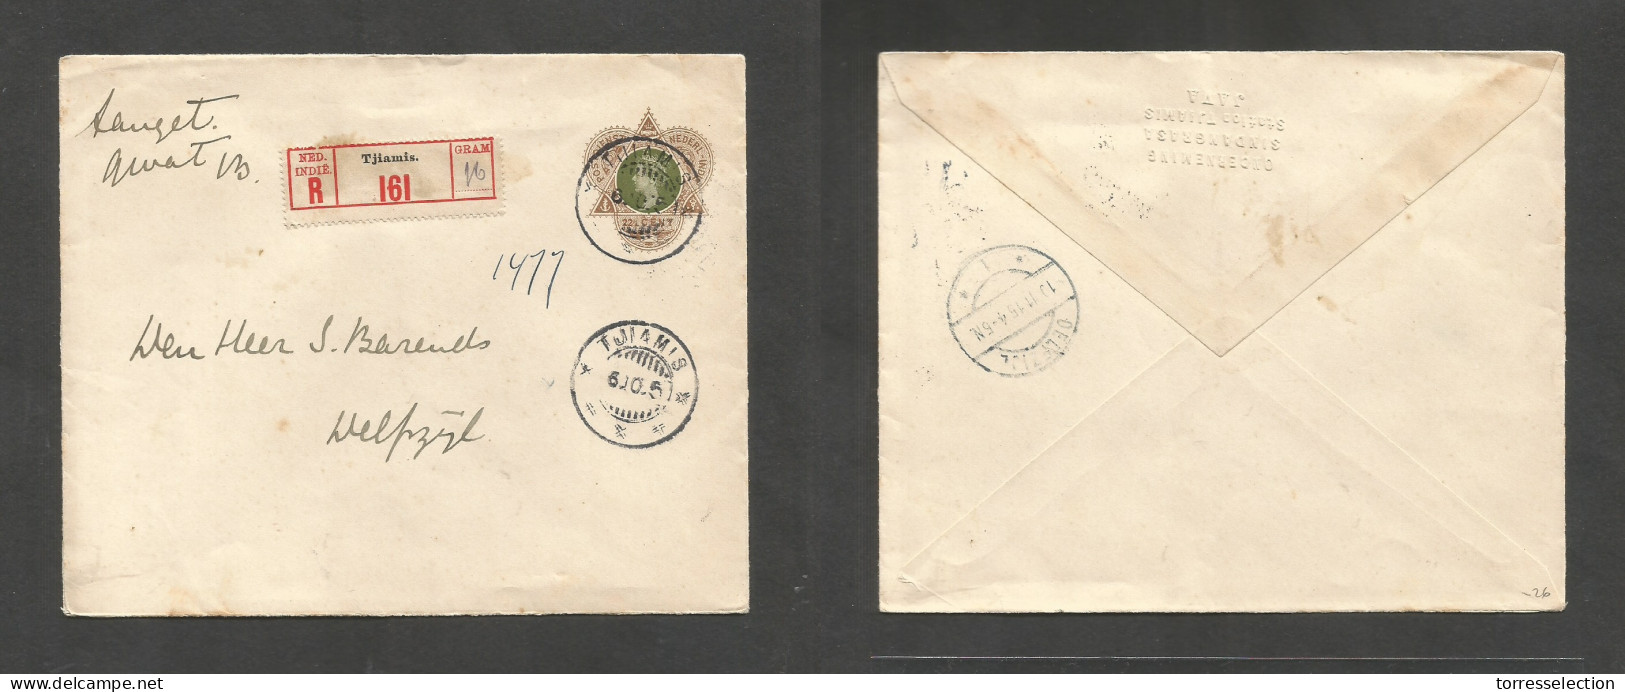 DUTCH INDIES. 1915 (6 Oct) Tjiamis - Delft, Netherlands (10 Nov) Registered 22 1/2c Bicolor Stat Env, Cds + R-label. Fin - Netherlands Indies